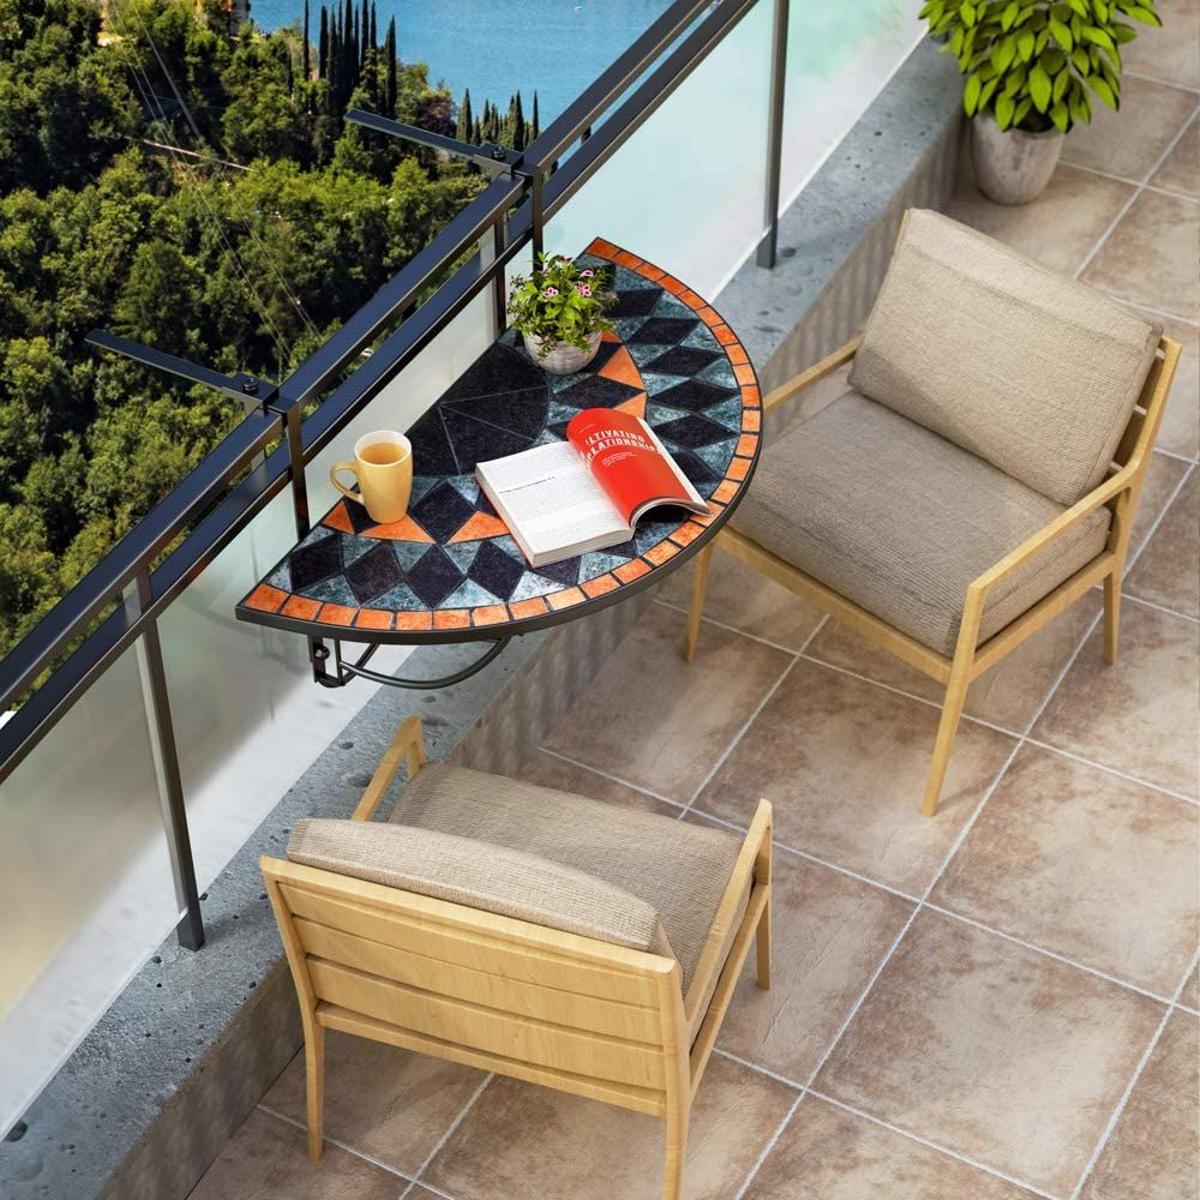 Conjuntos de sillas y mesa para balcones o terrazas pequeñas